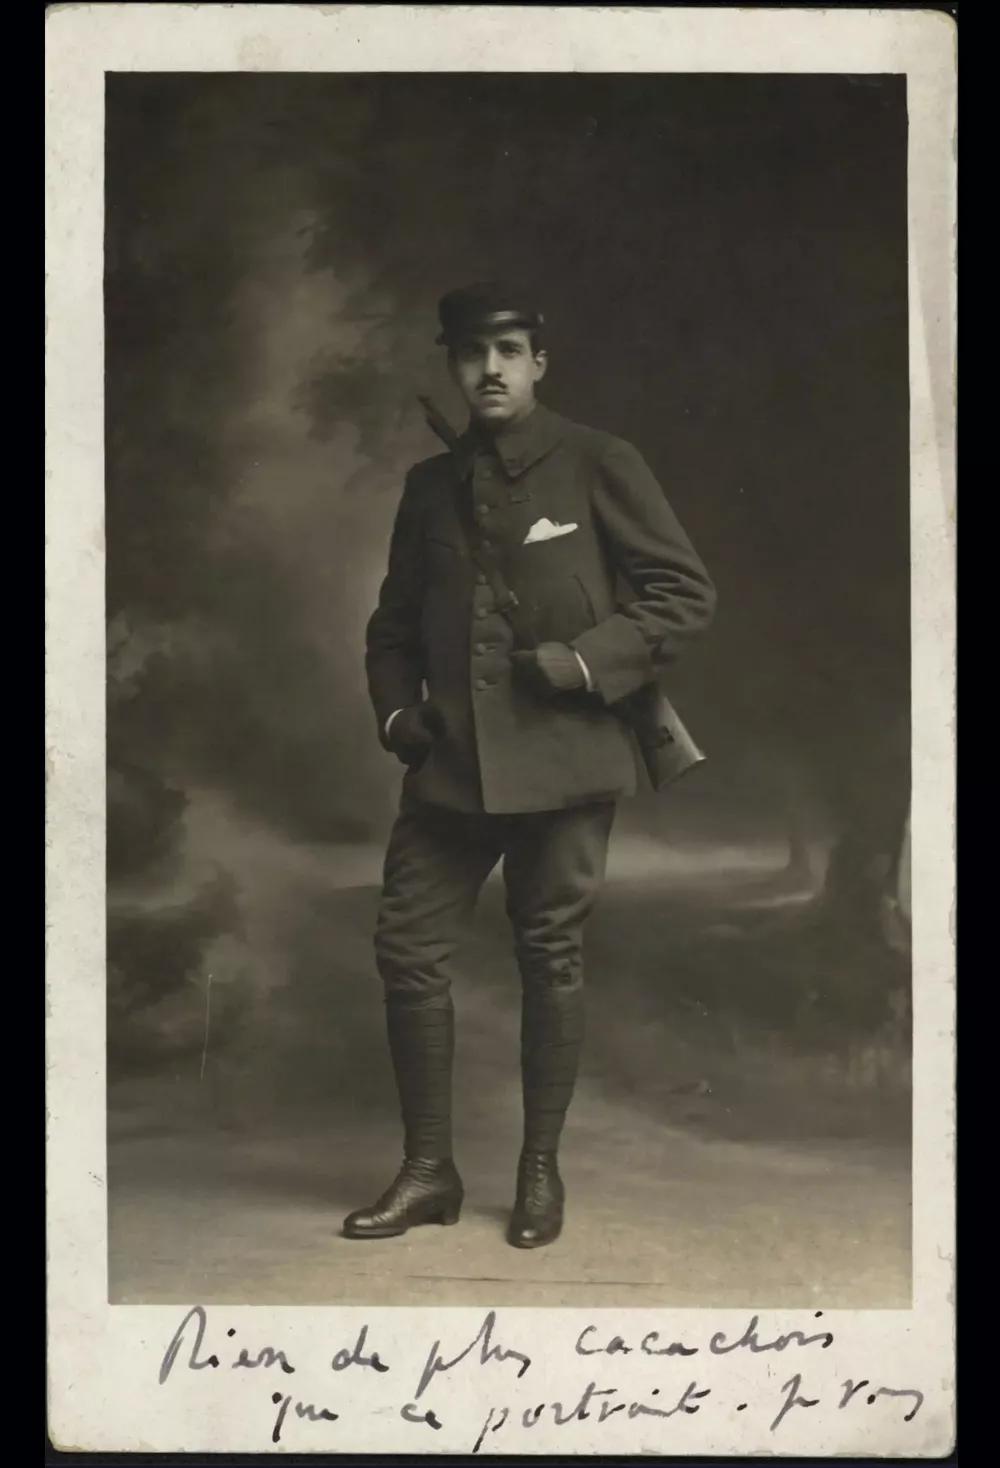 El compositor francés de origen venezolano Reynaldo Hahn, primero amante y más tarde amigo y confidente de Proust.